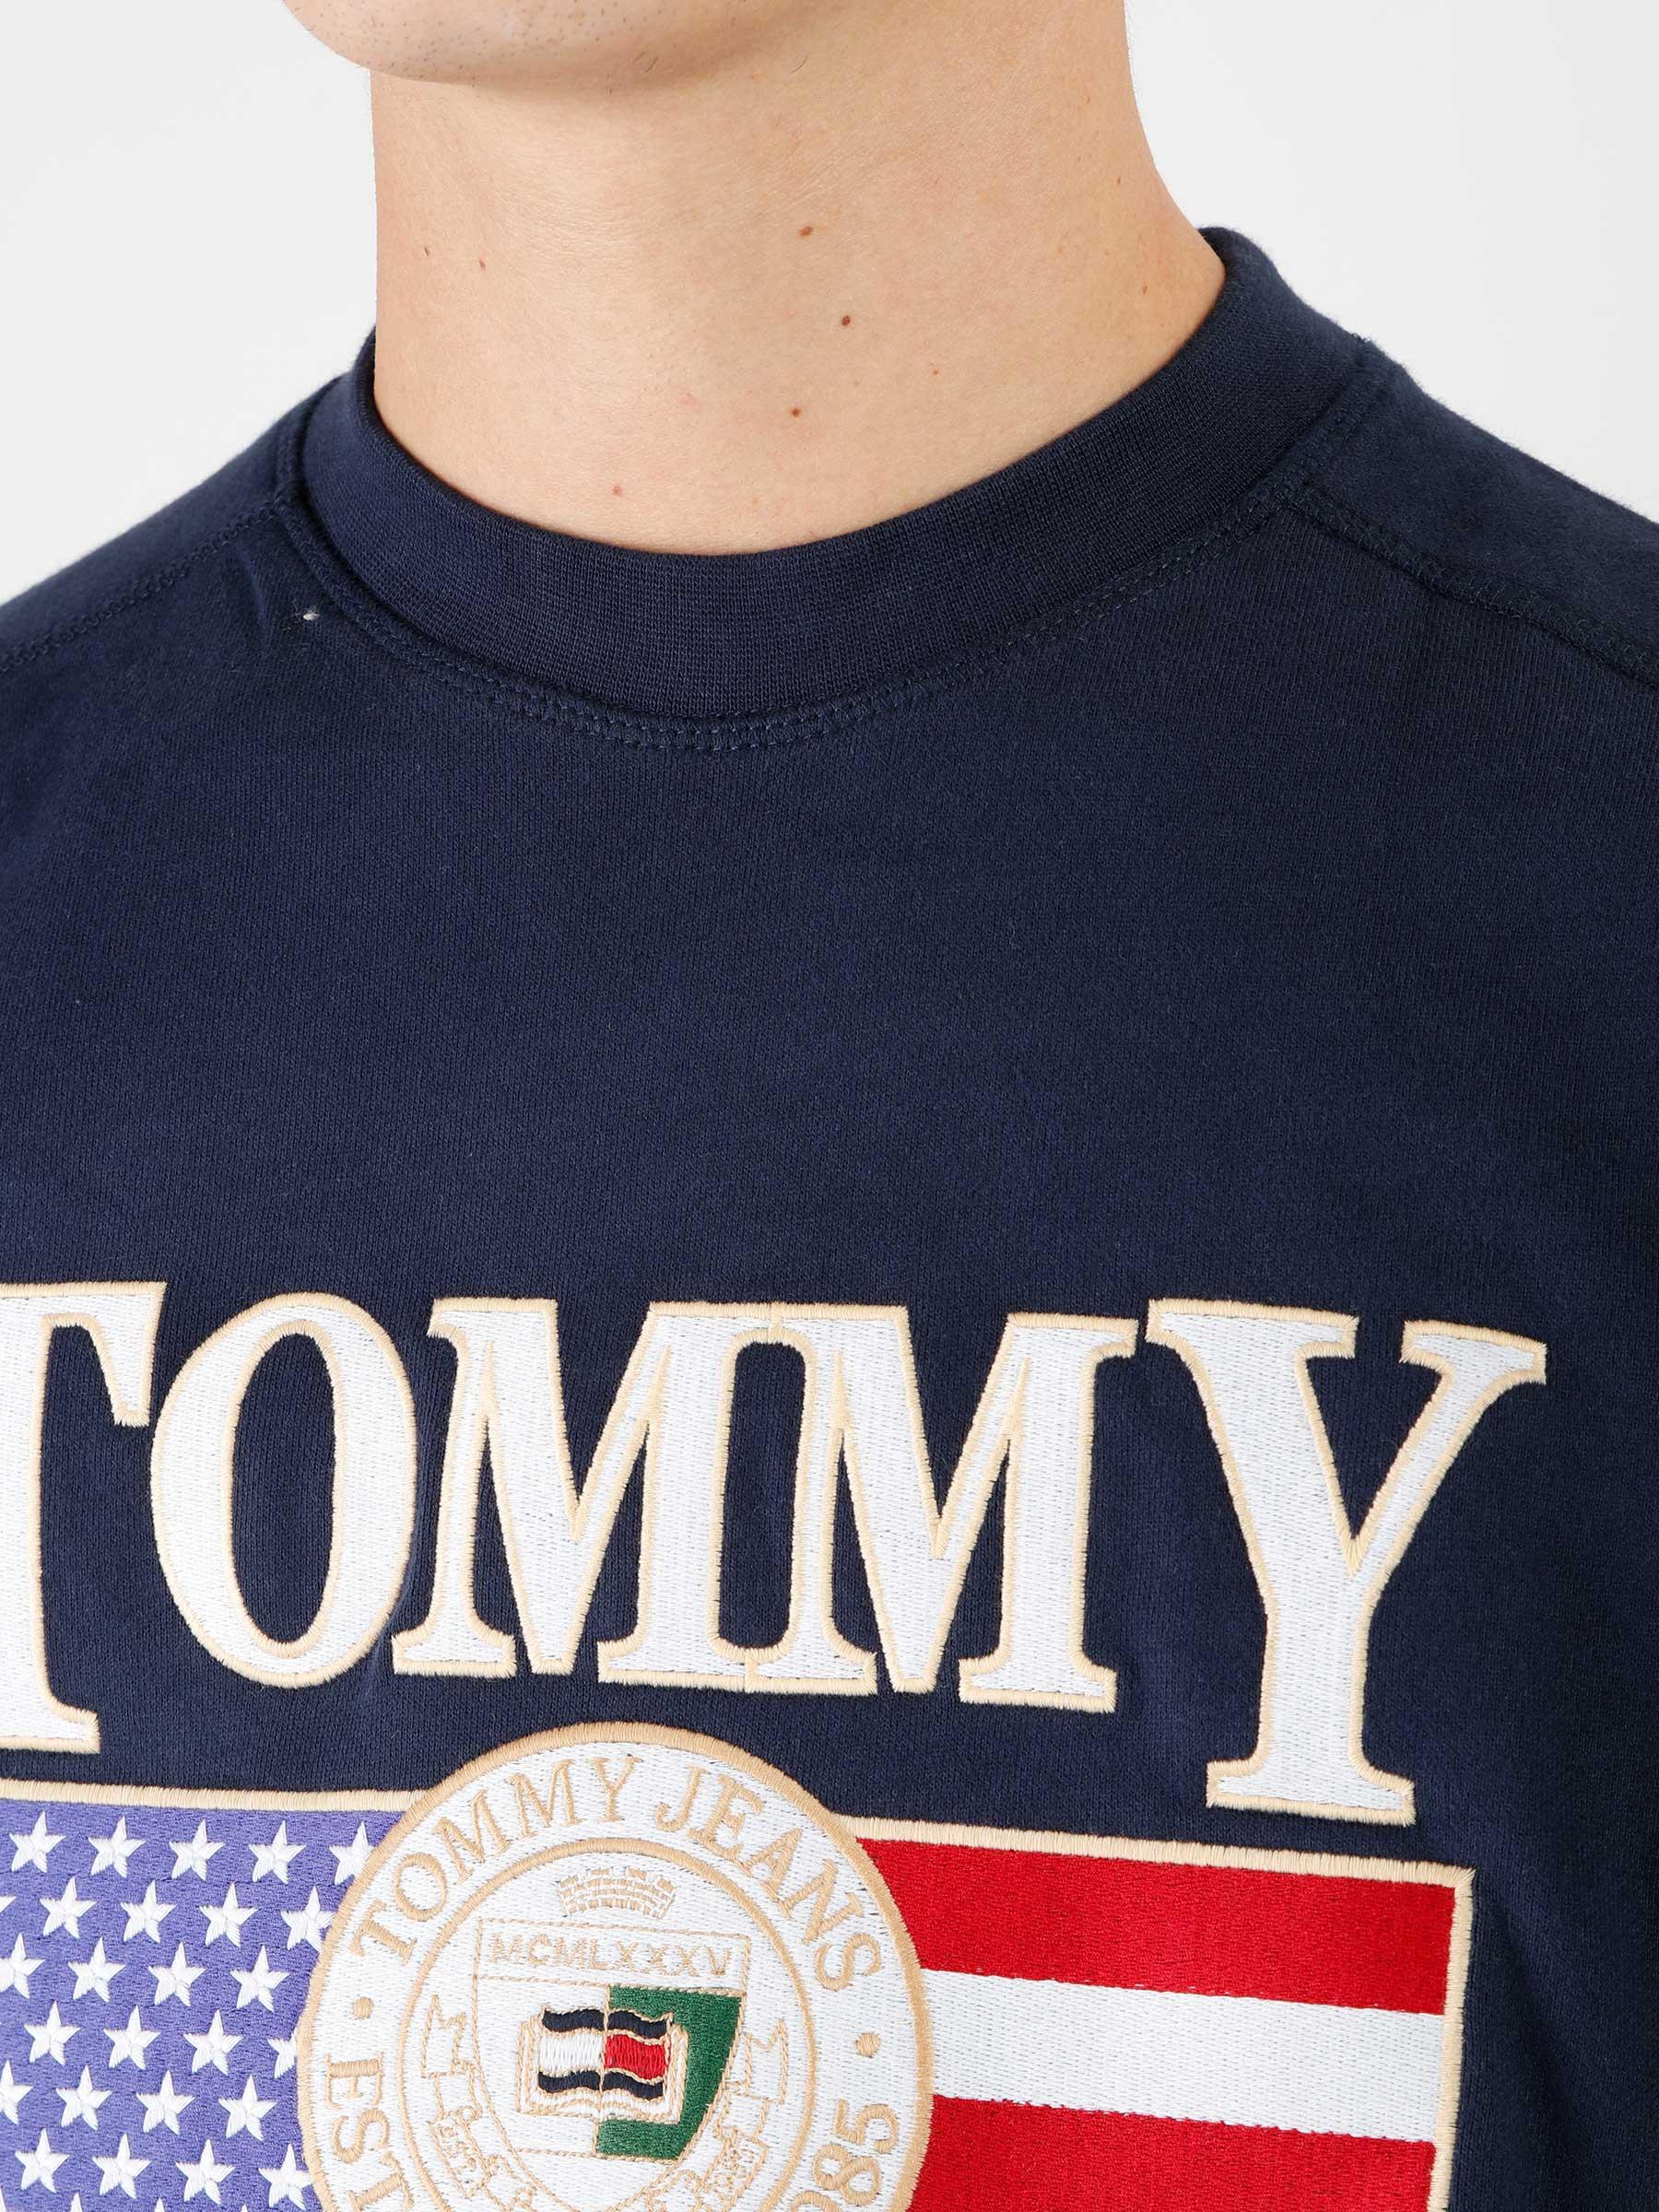 Tommy Jeans TJM Boxy TJ Luxe Crewneck Twilight Navy - Freshcotton